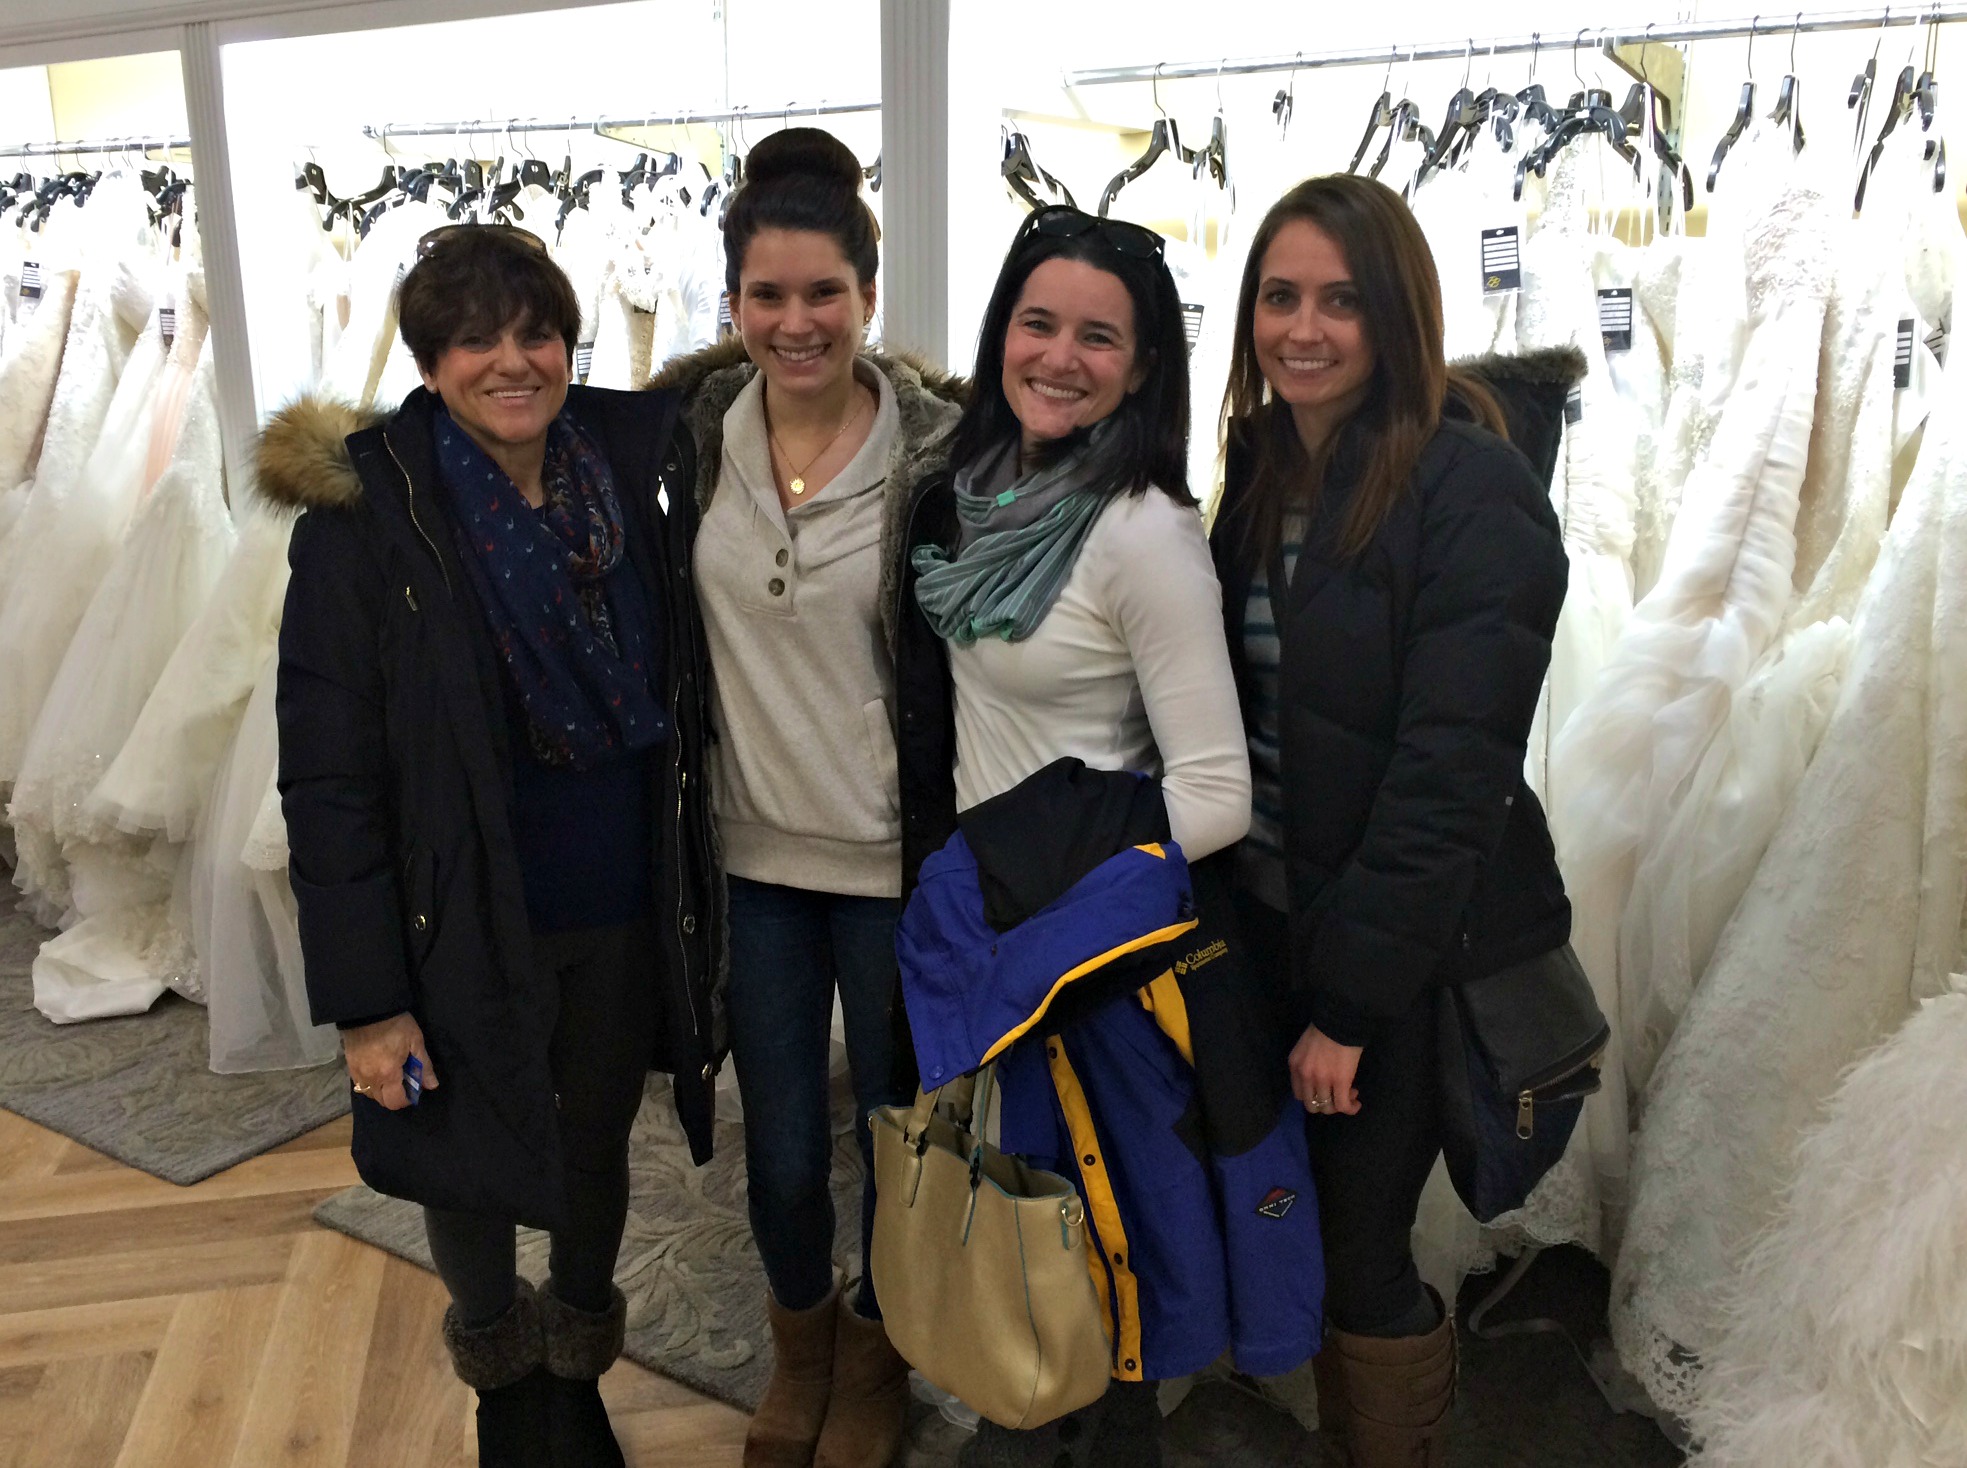 wedding dress shopping becker's bridal